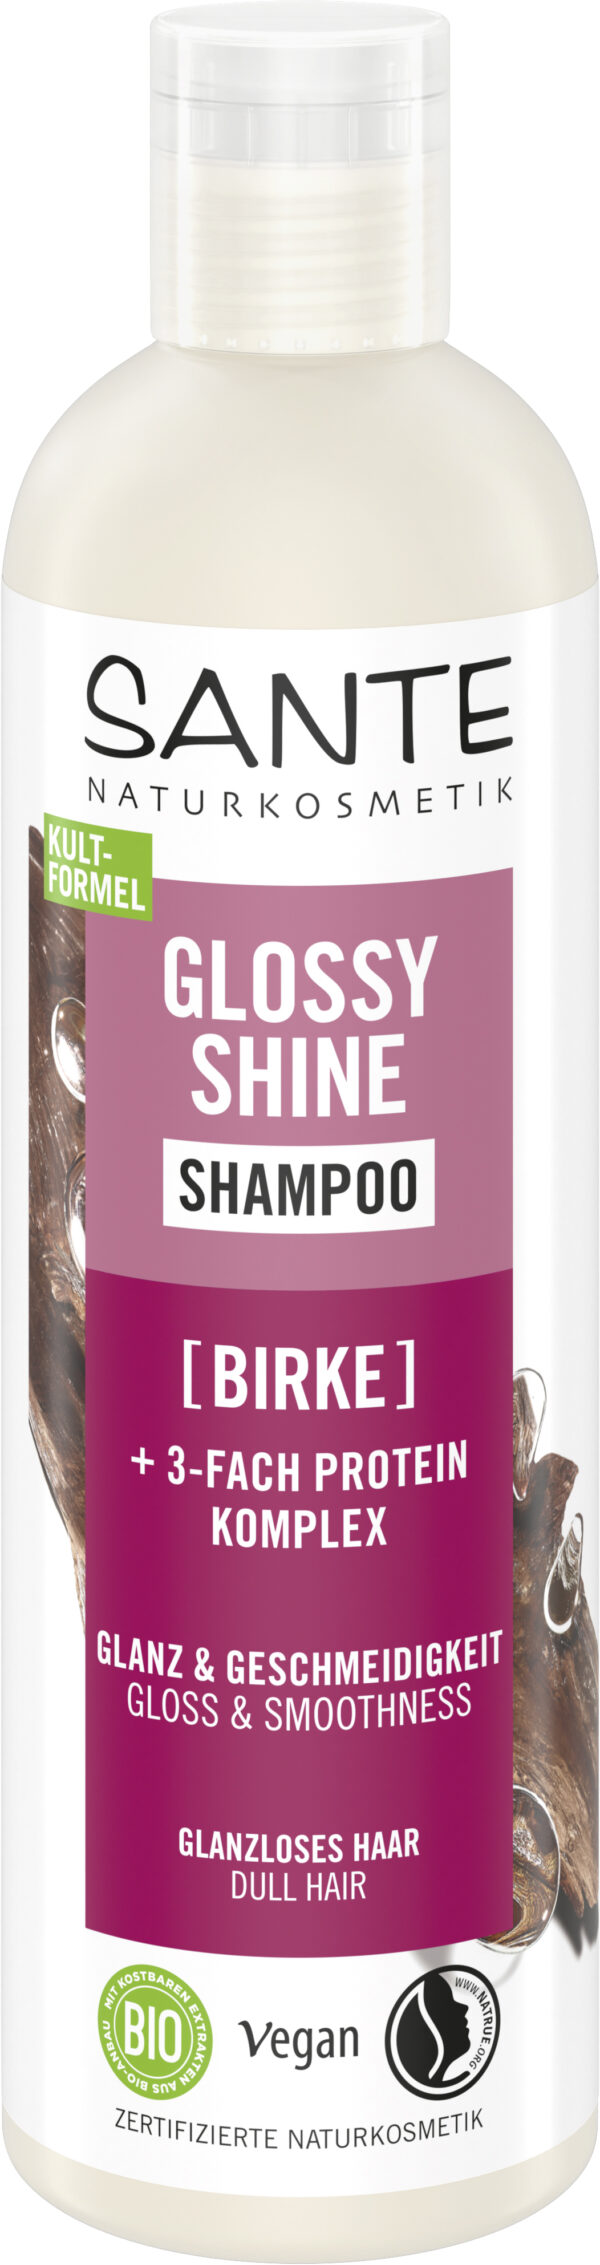 Šampon GLOSSY SHINE 250 ml